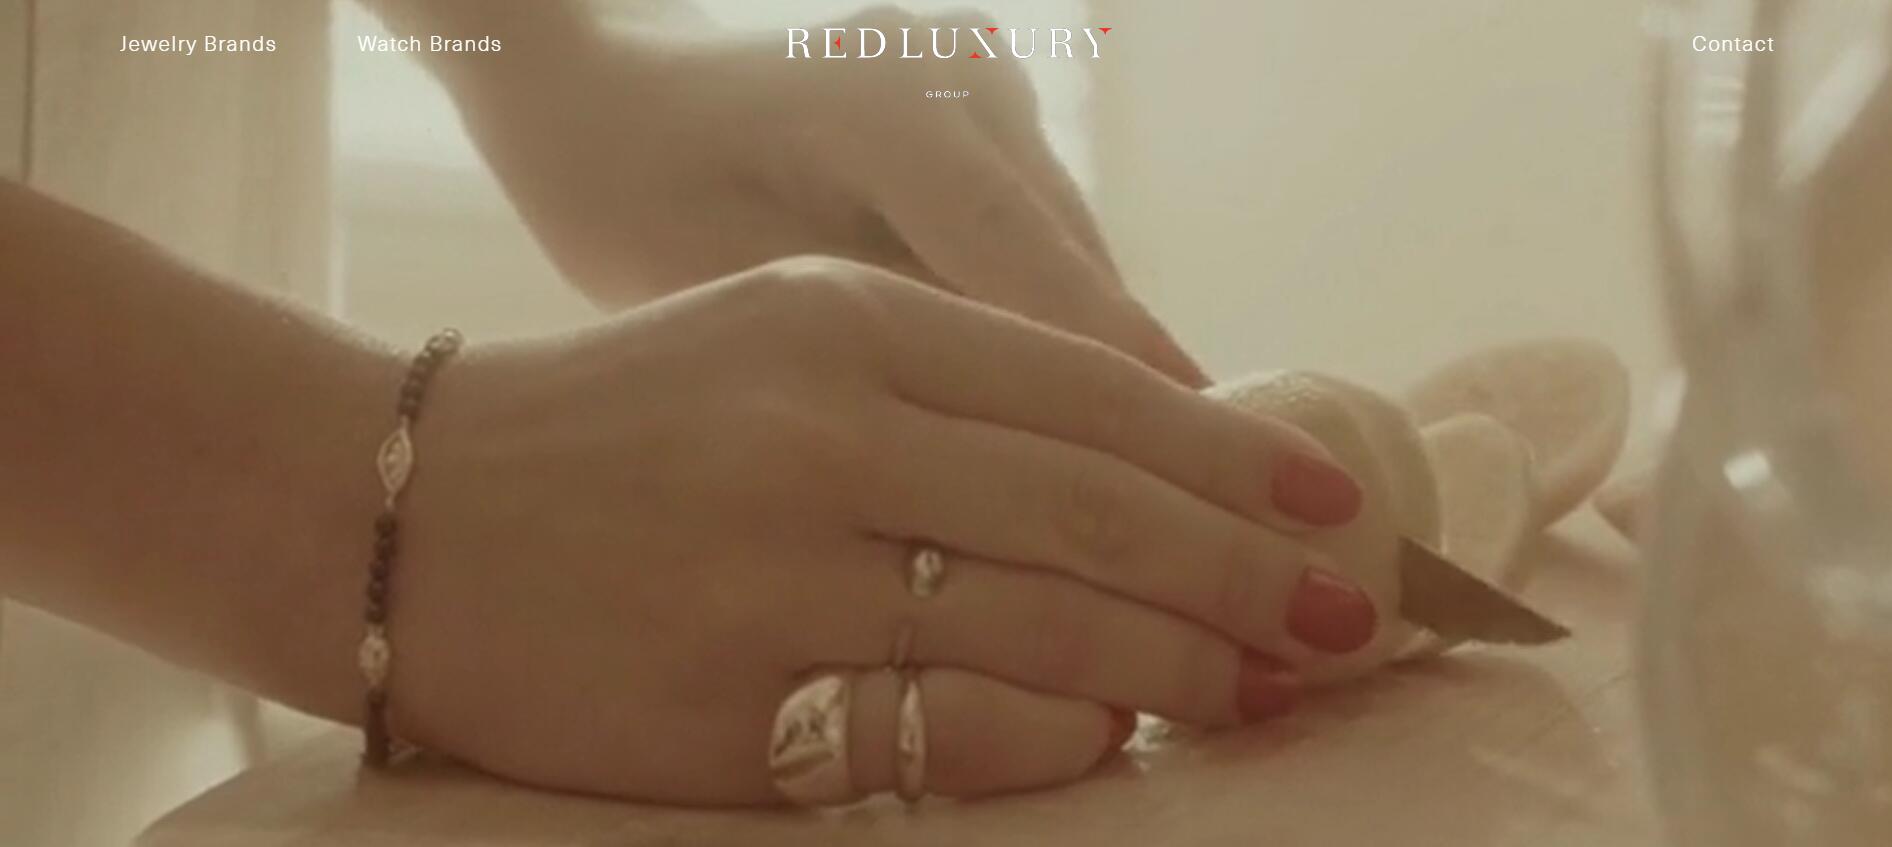 法国制表珠宝集团 Red Luxury与 Vilebrequin 和 Sonia Rykiel 分别签署腕表、珠宝产品独家授权协议